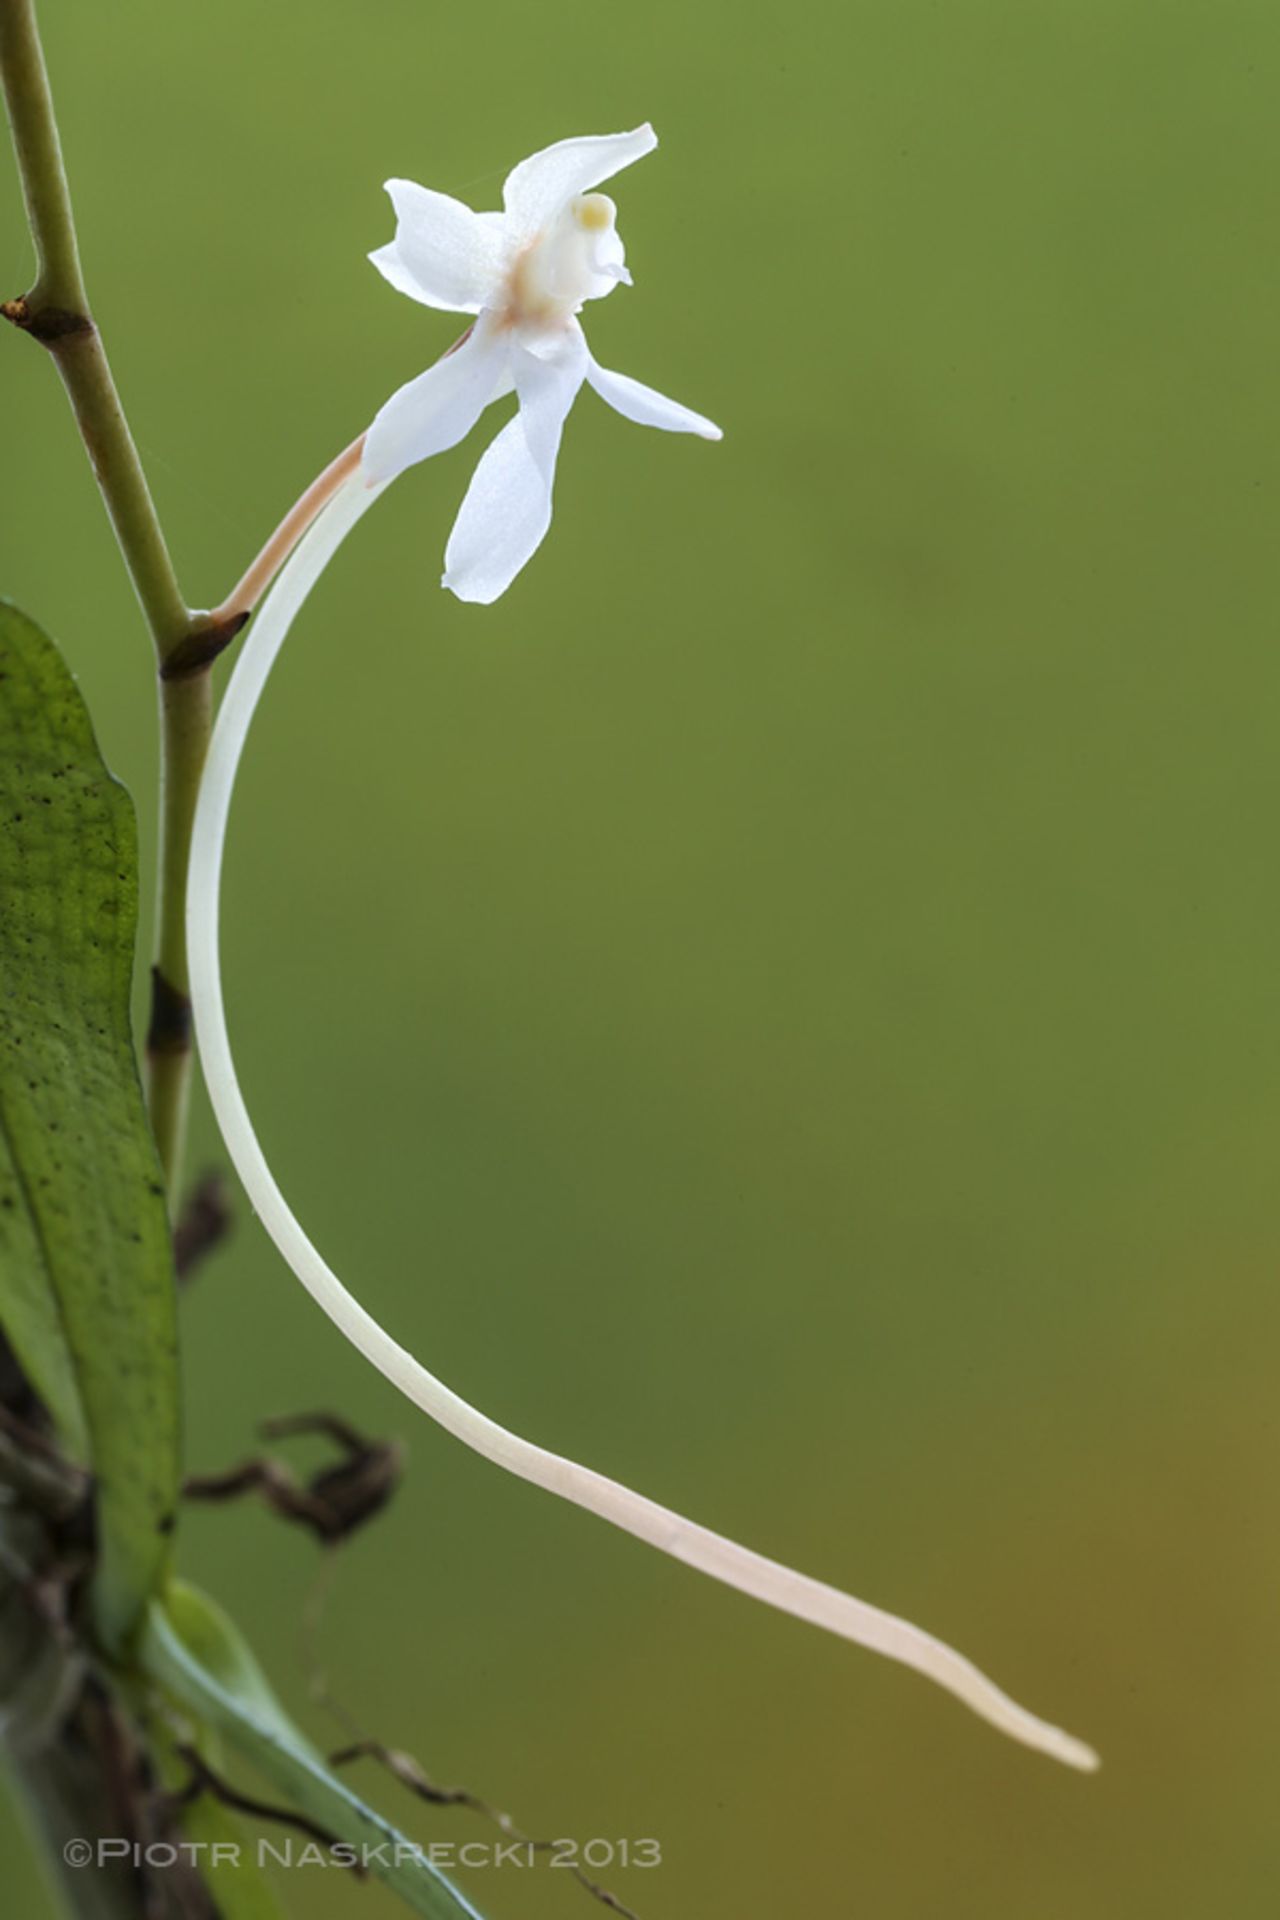 Durante la expedición de cuatro semanas, los científicos documentaron al menos 1.200 especies de animales y plantas en la meseta Cheringoma. Aquí, un árbol de orquídea (Aerangis mystacidii), una de las 17 especies de orquídeas que se encuentran en el lugar.